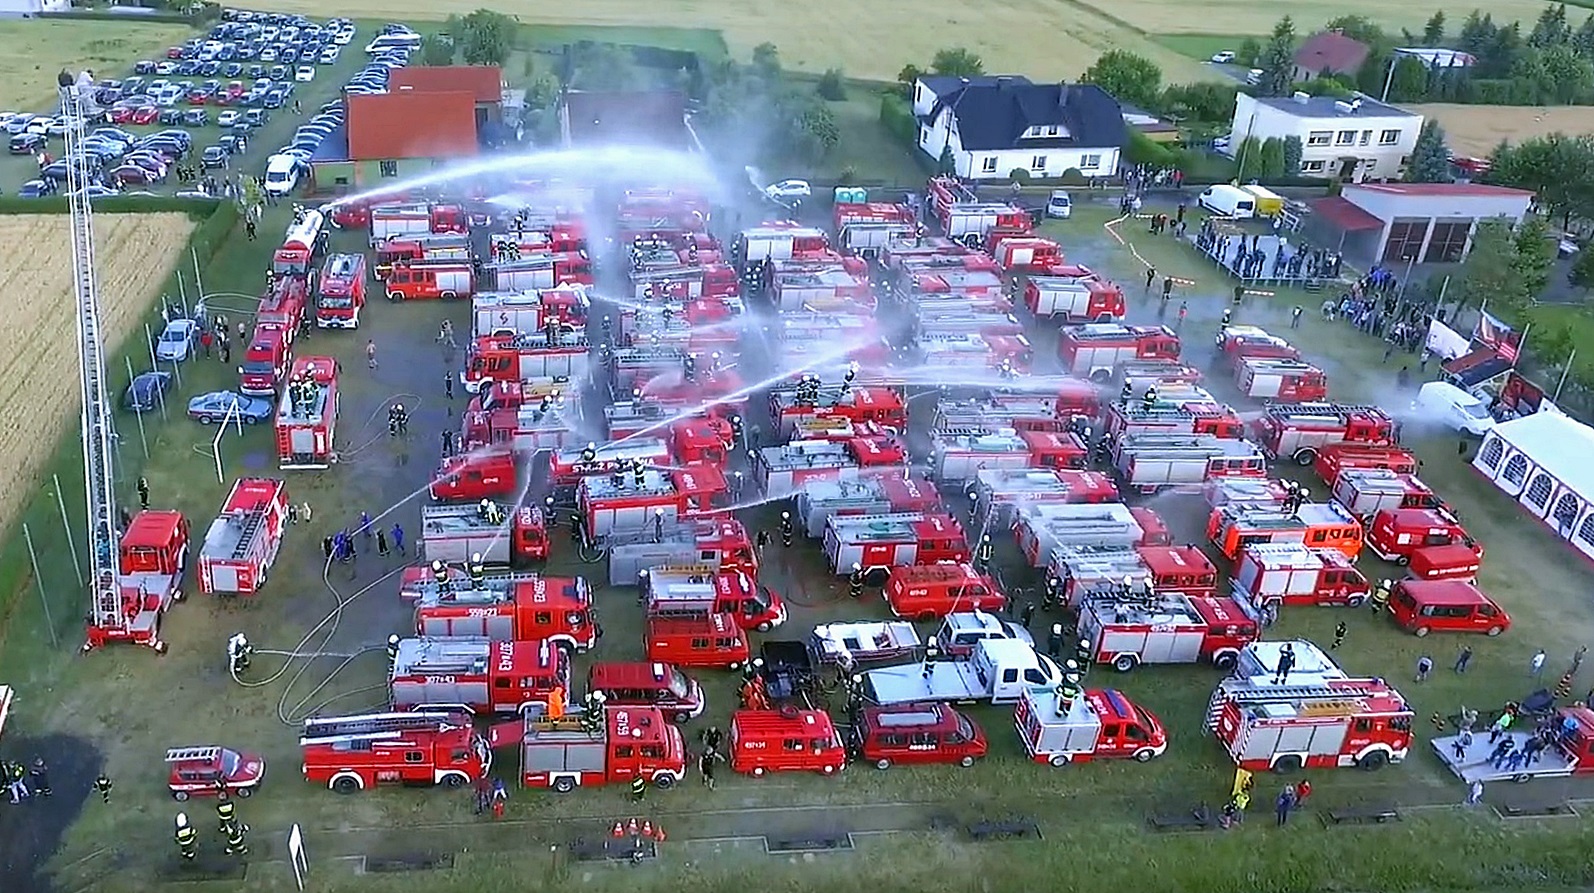 Zbliża się Fire Truck Show Międzynarodowy Zlot Pojazdów Pożarniczych